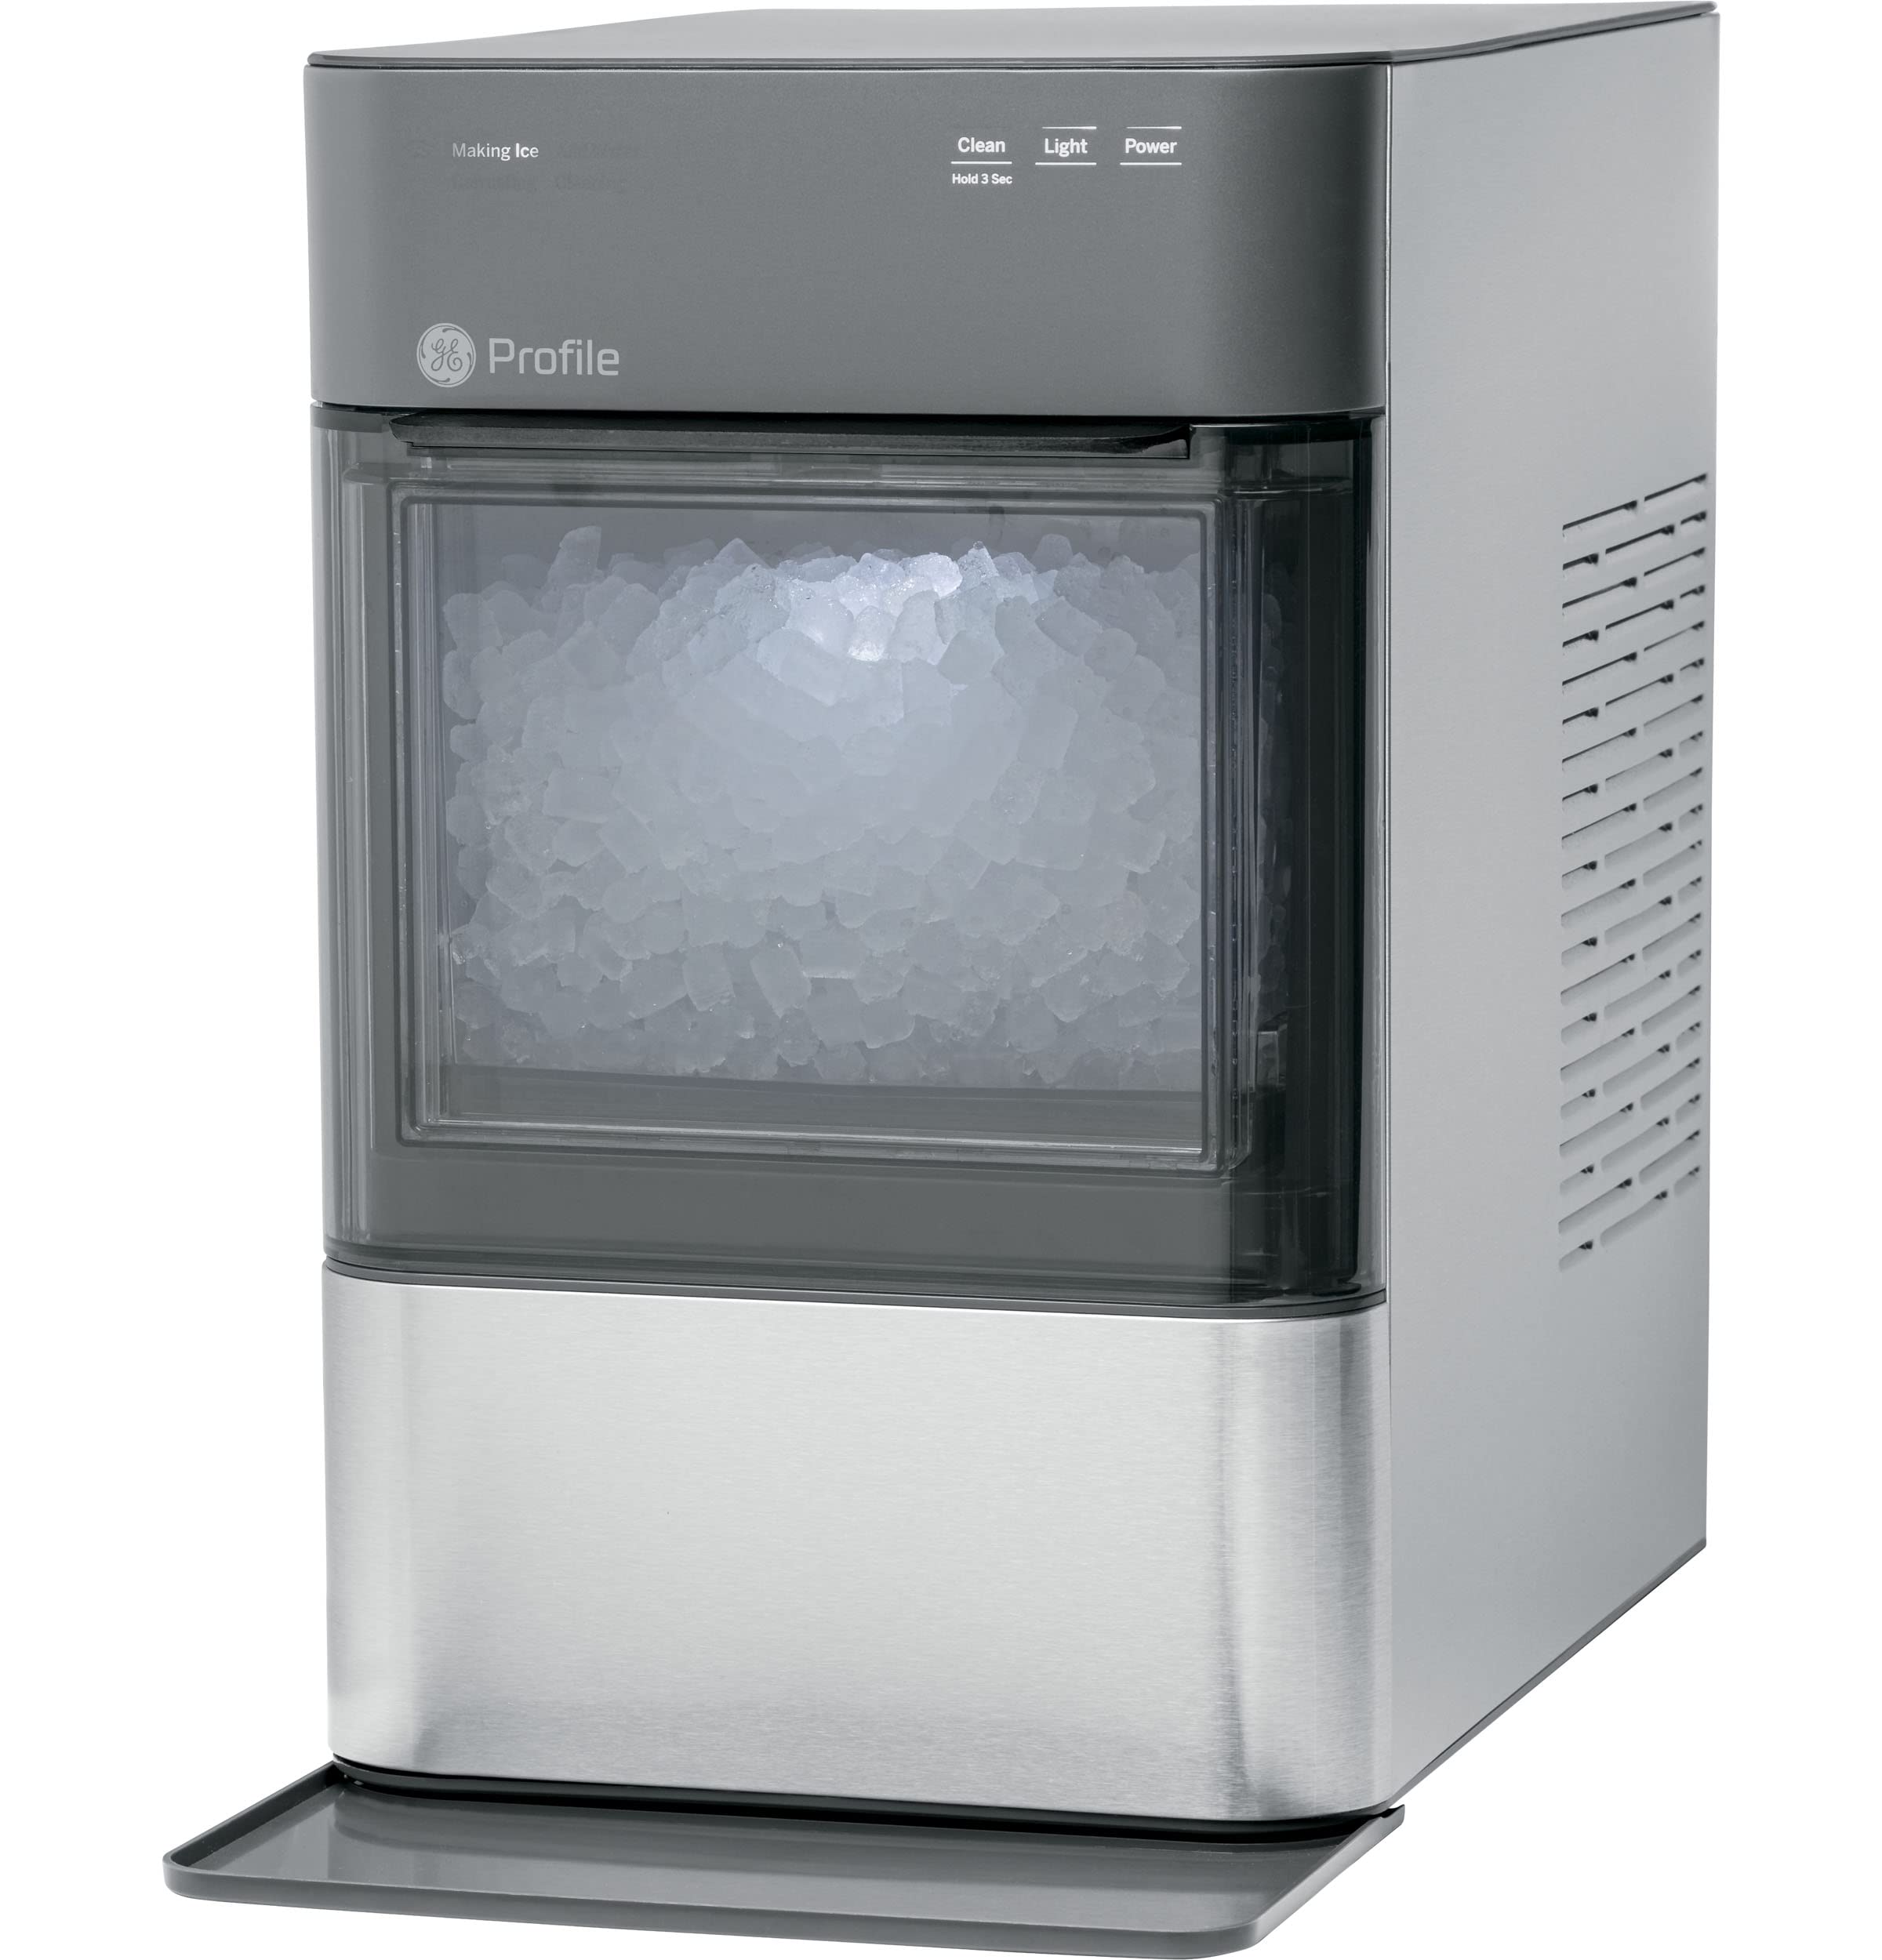 GE 简介蛋白石2.0 |台面 Nugt 制冰机 |带 WiFi 连接的制冰机 |智能家居厨房必备品 |不锈钢